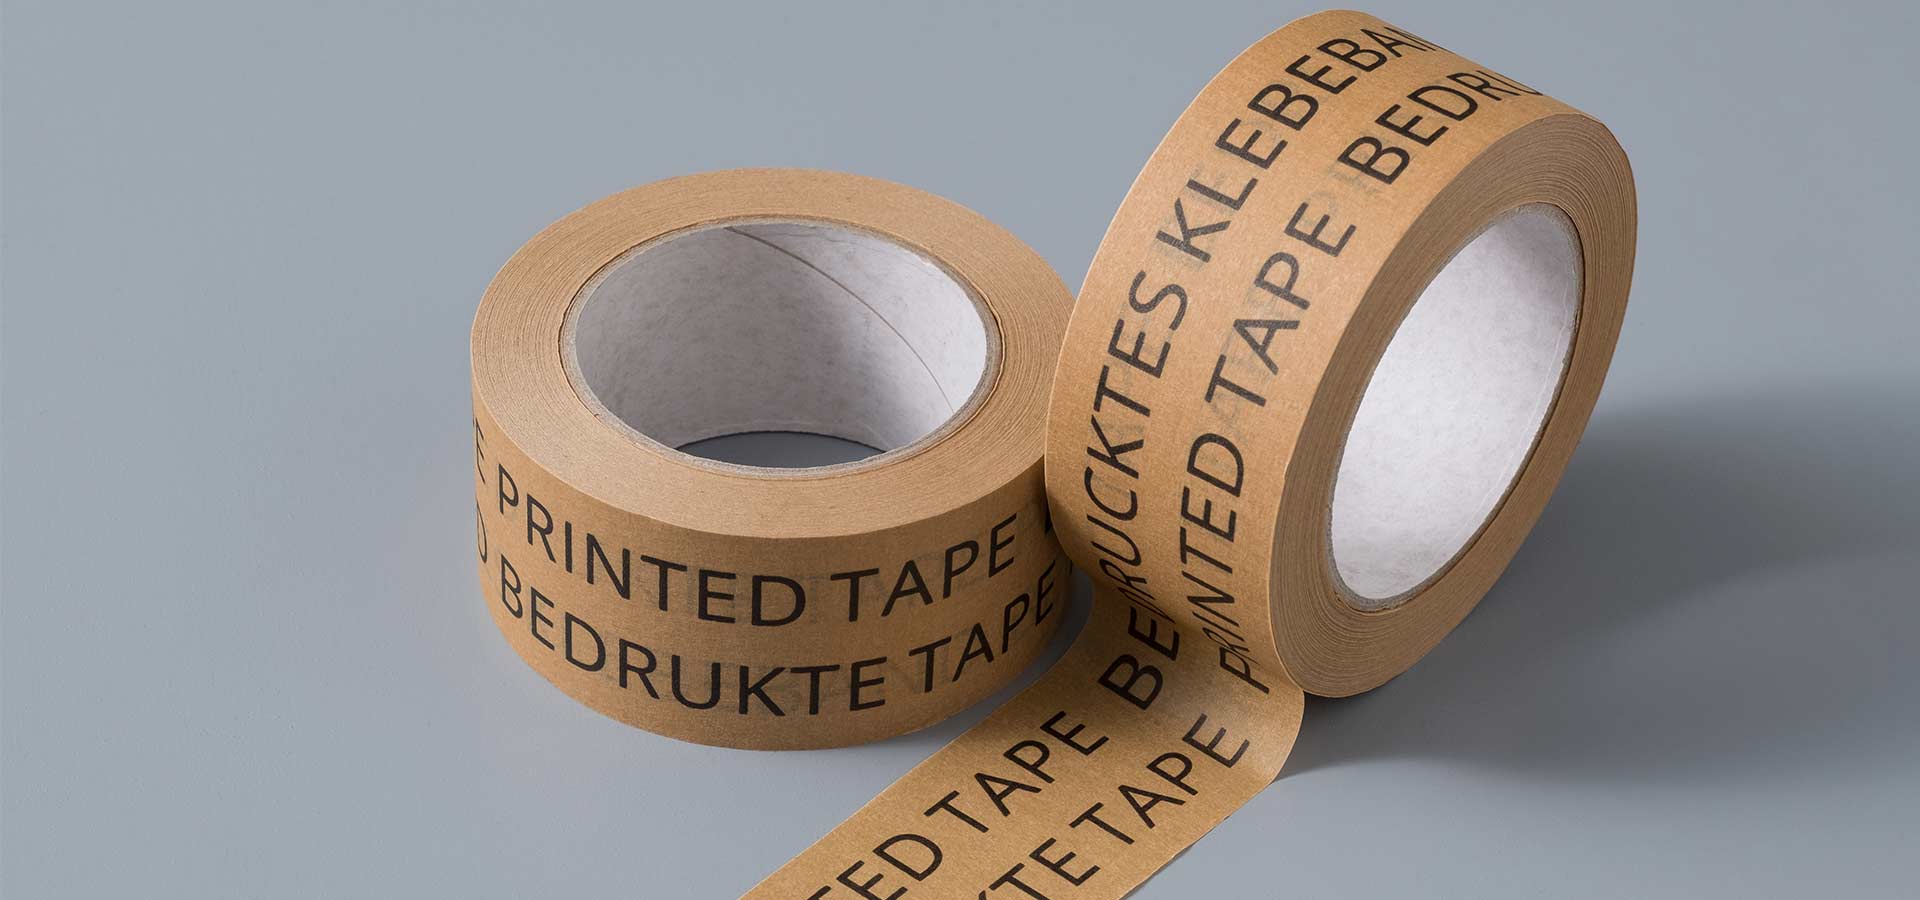 Label Tapes Market